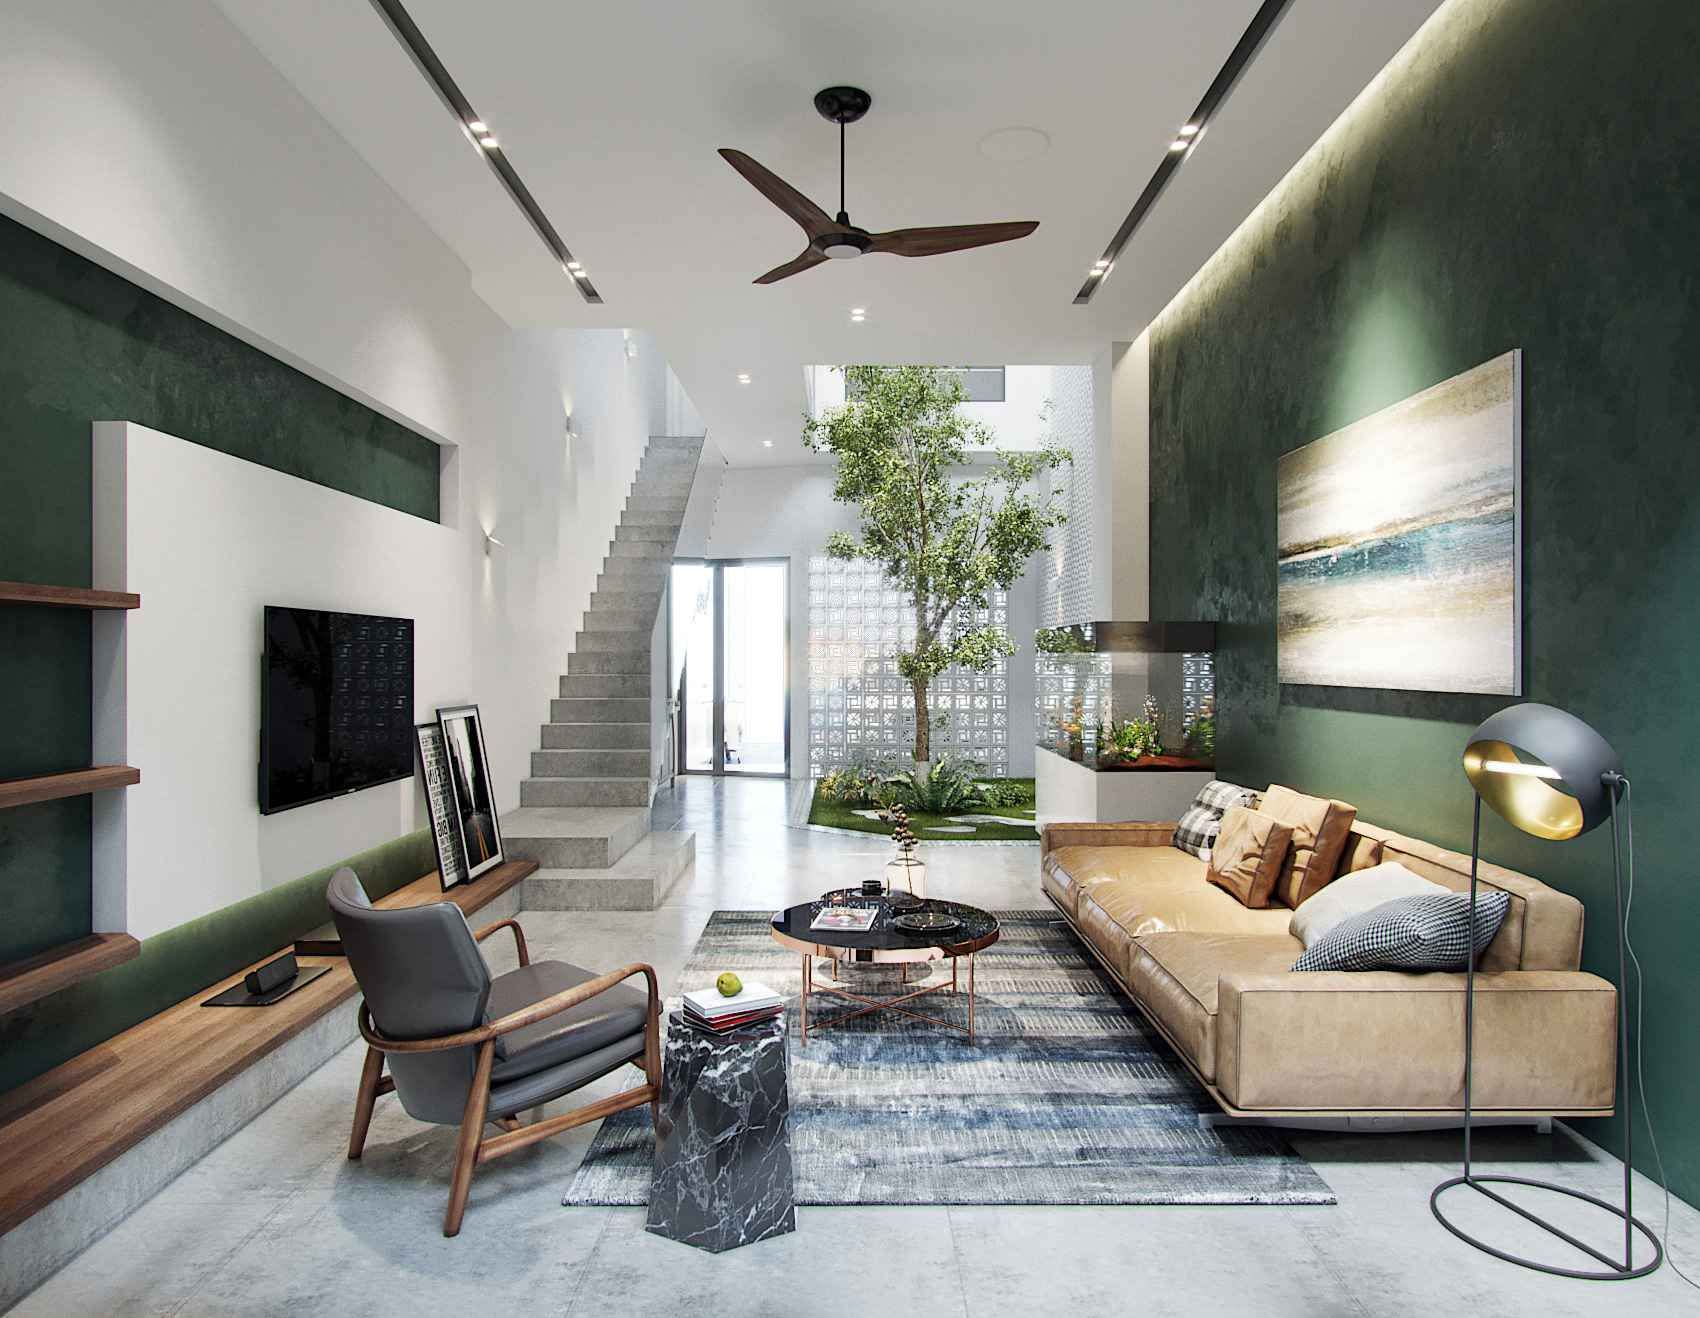 Thiết kế nội thất phòng khách nhà phố với những cây xanh nho nhỏ đem đến không gian tươi mát